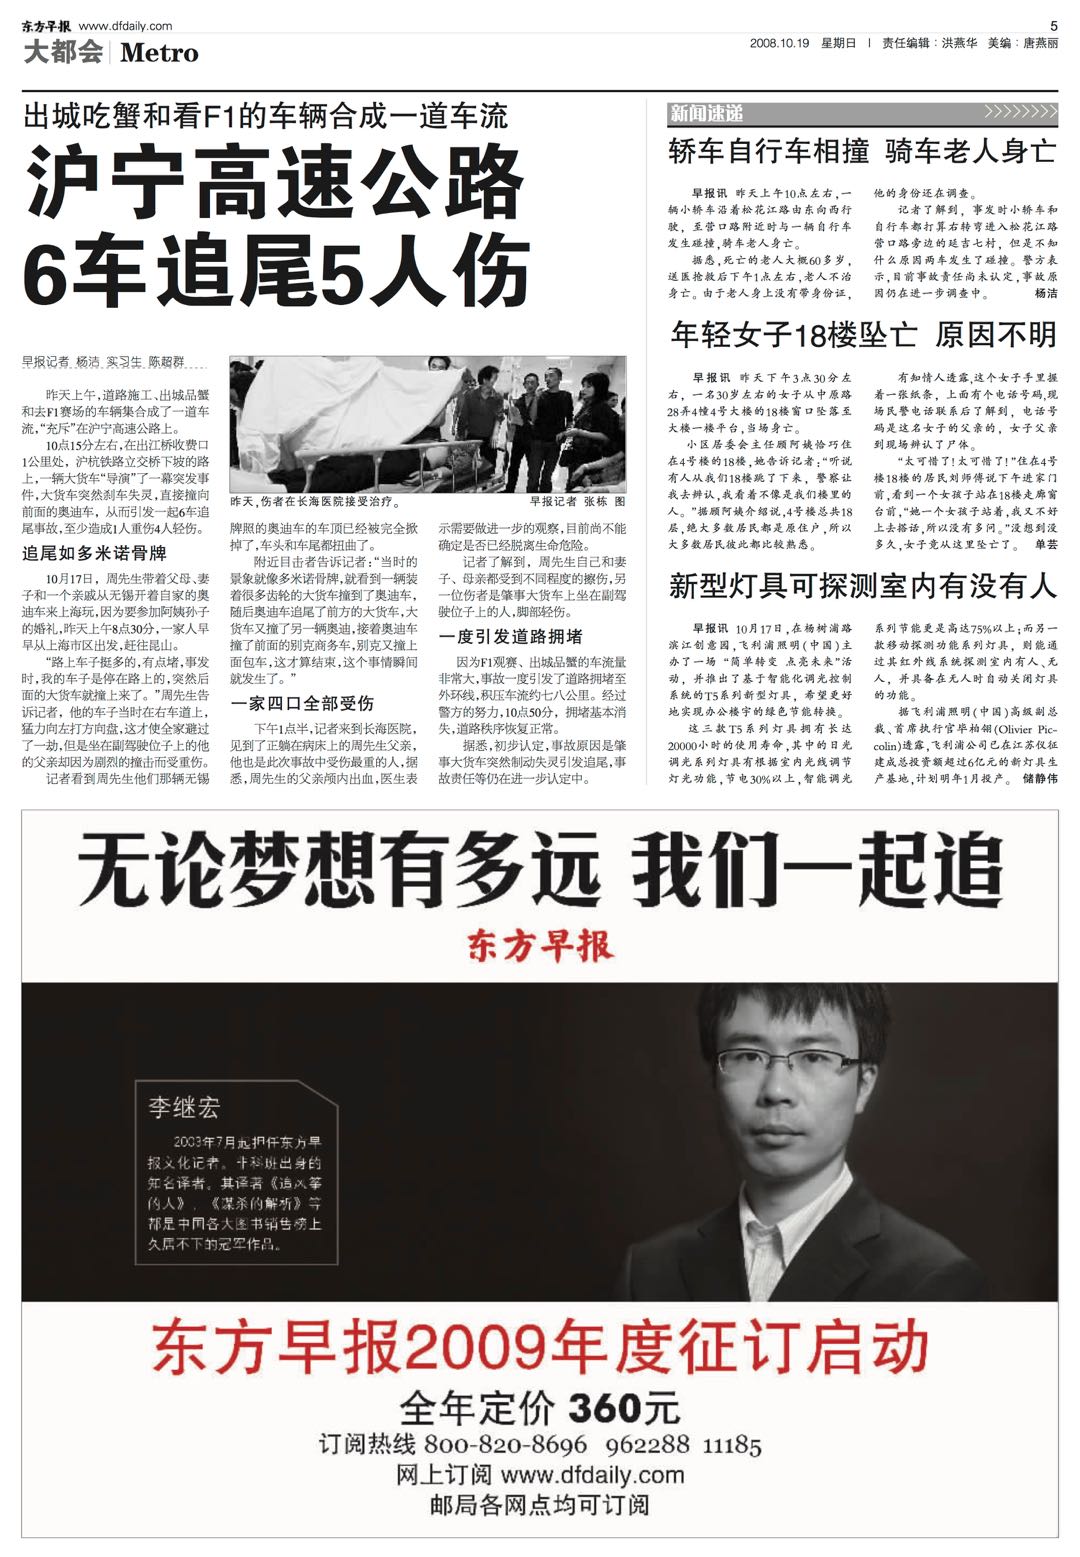 李繼宏曾代言《東方早報》2009年度征訂廣告